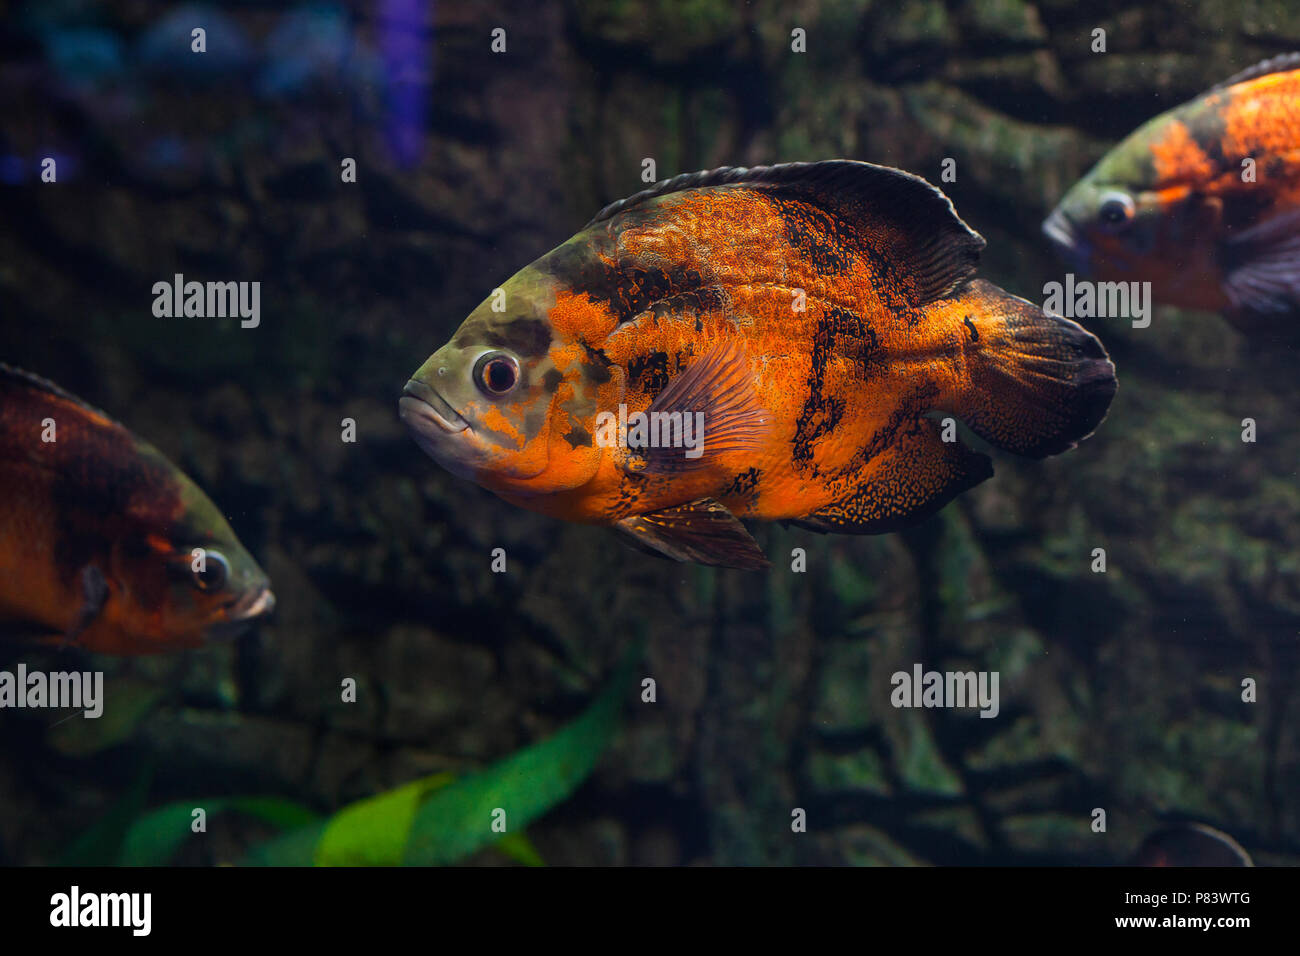 Astronotus ocellatus floating in aquarium. Oscar fish Stock Photo